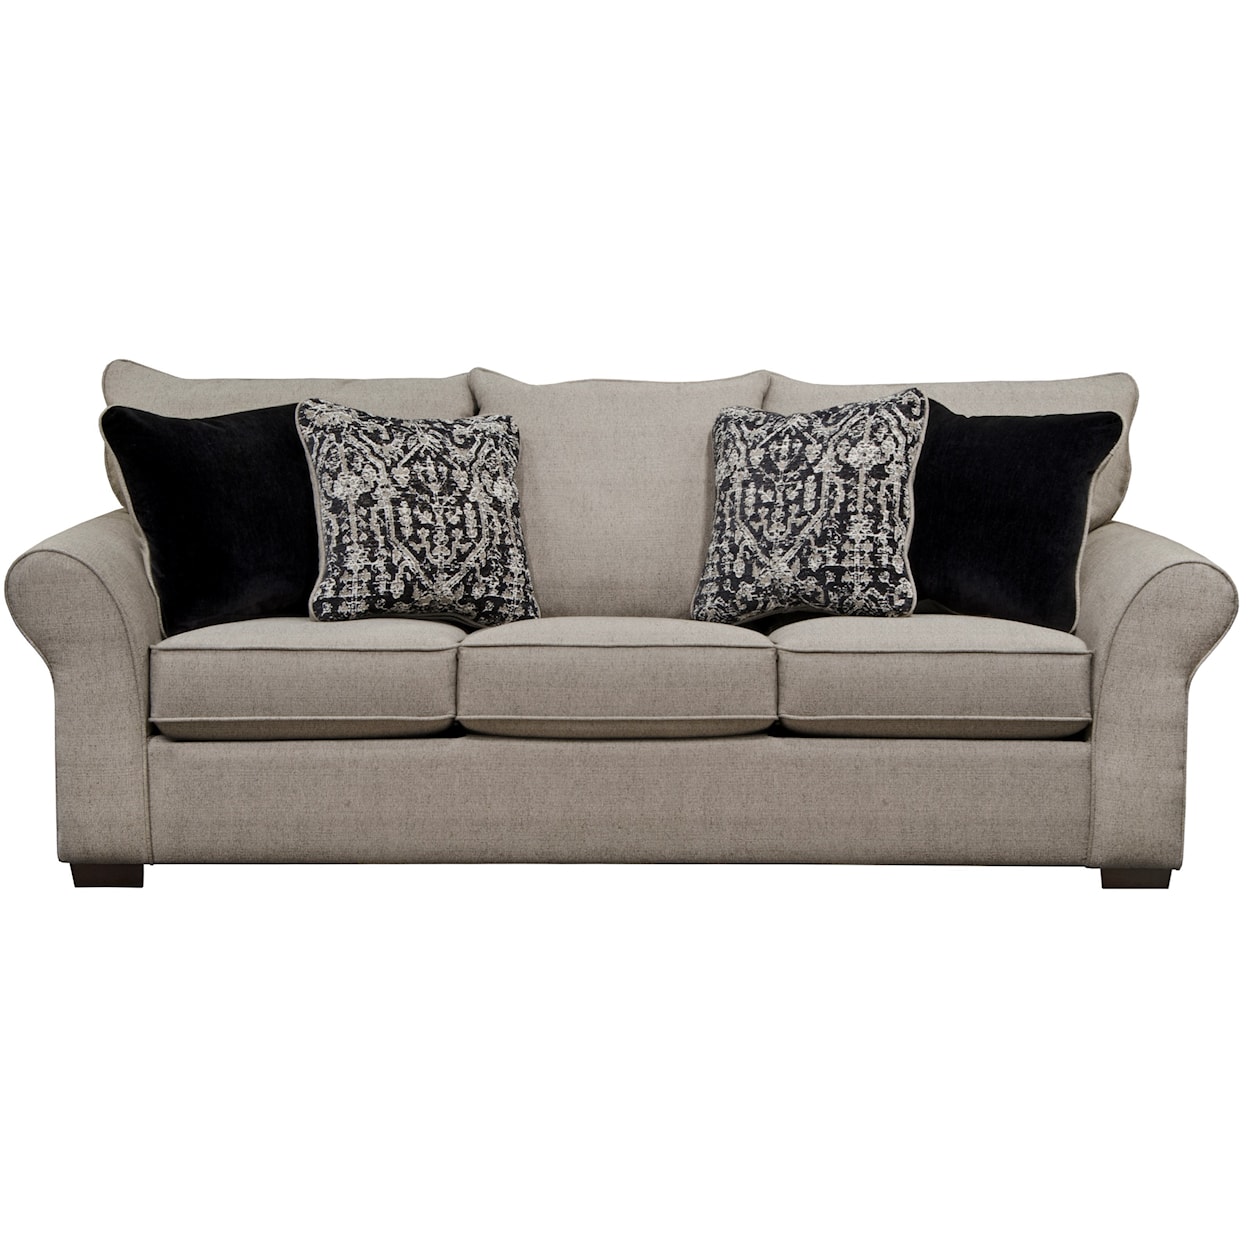 Jackson Furniture Maddox Queen Sleeper Sofa